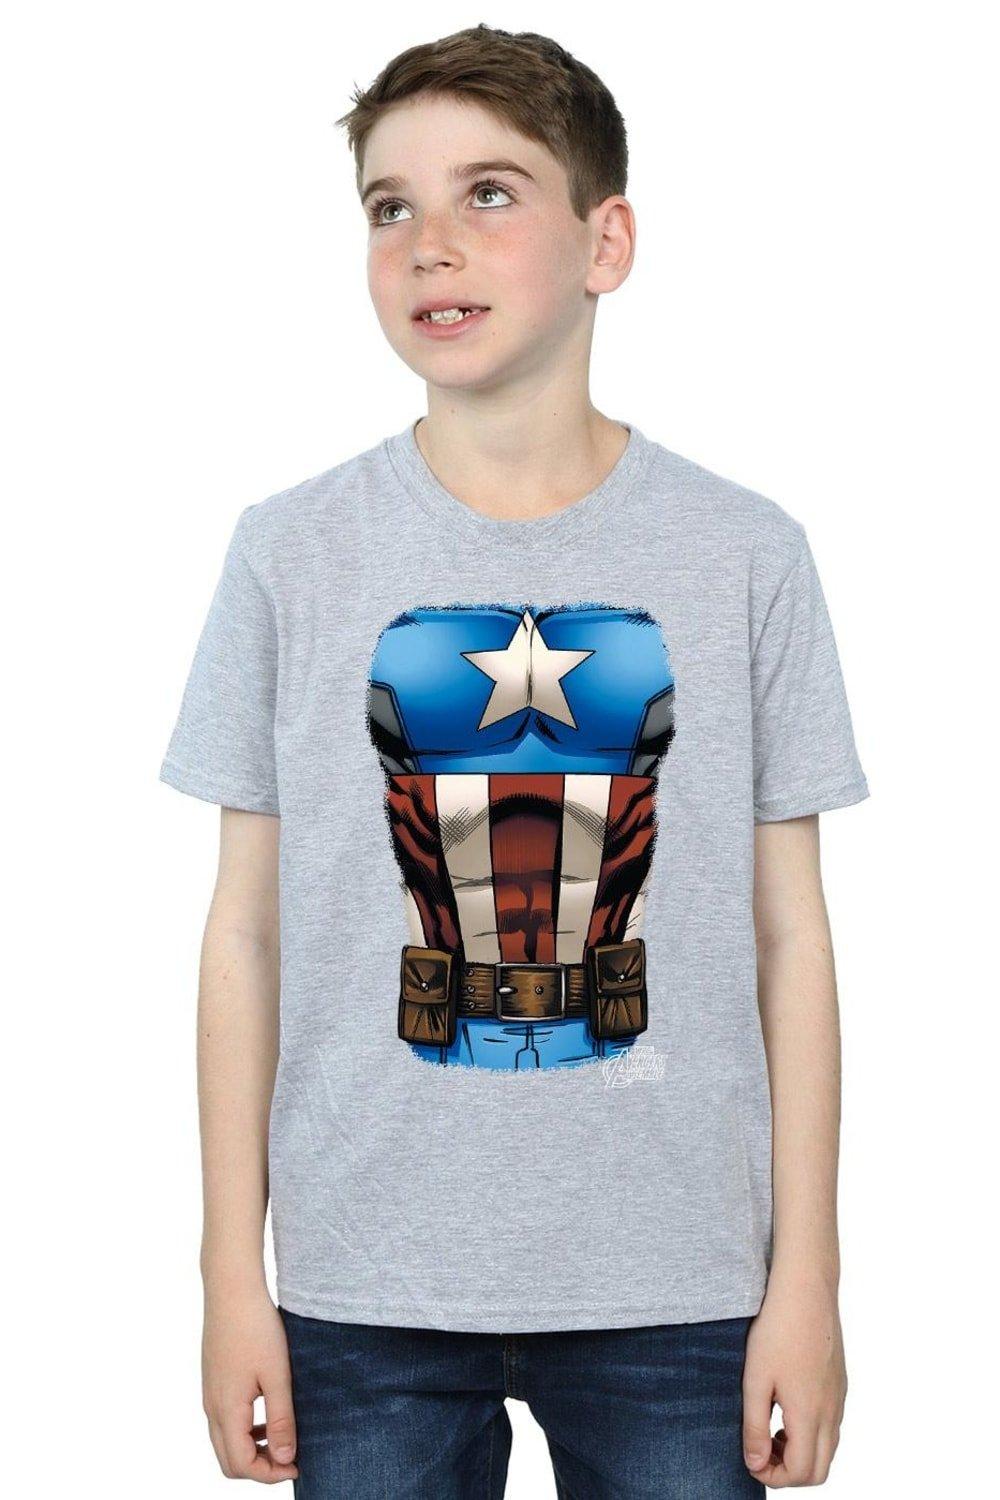 Captain America Chest Burst T-Shirt